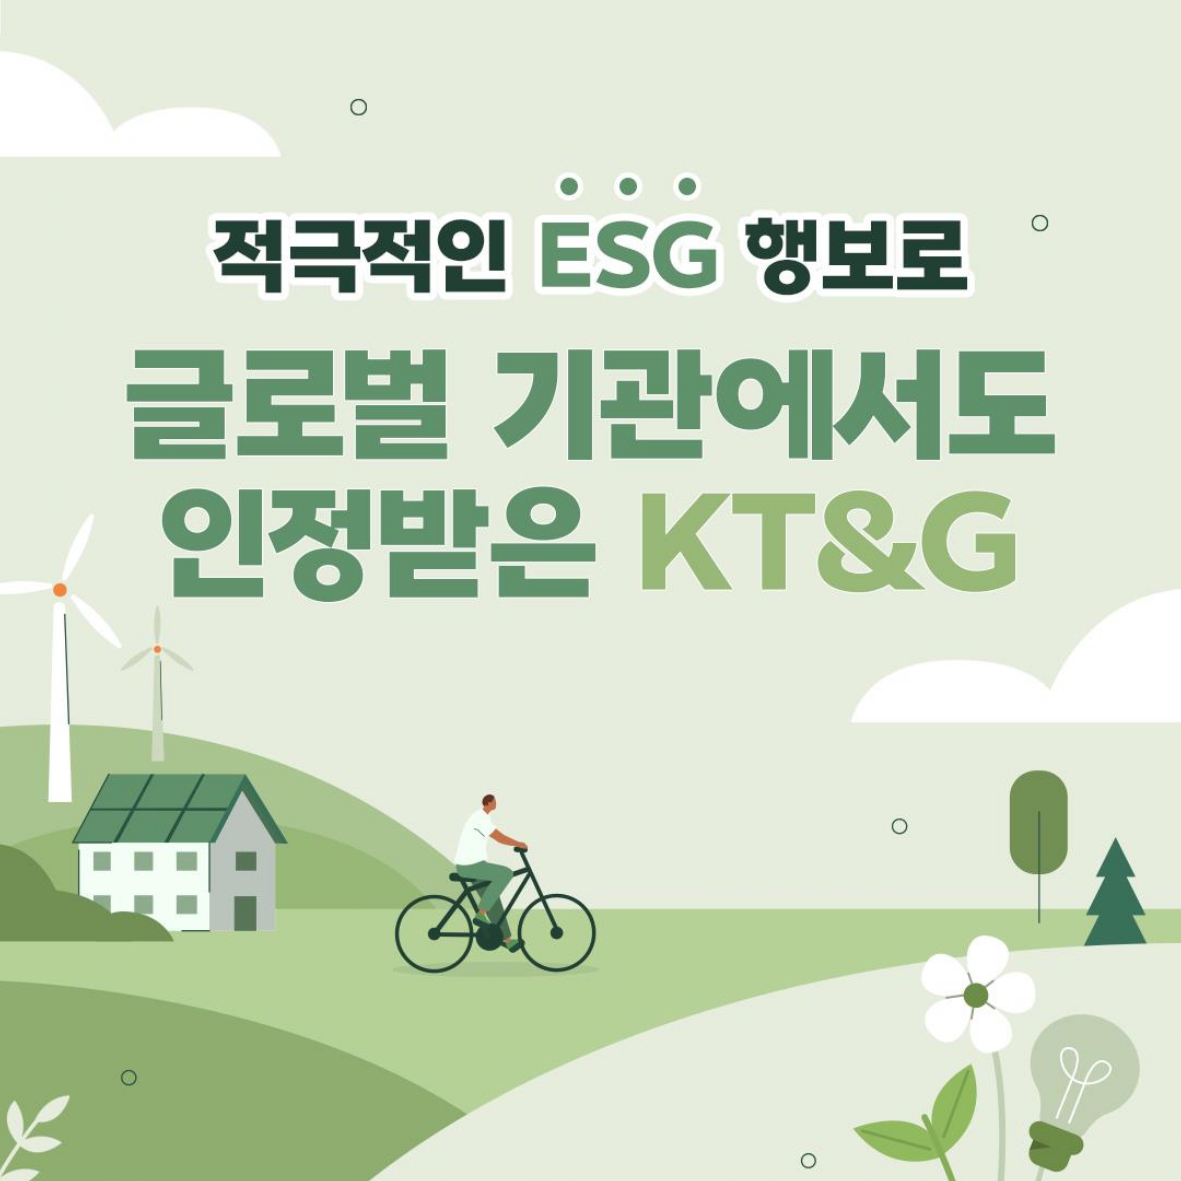 적극적인 ESG행보로 글로벌 기관에서도 인정받은 KT&G